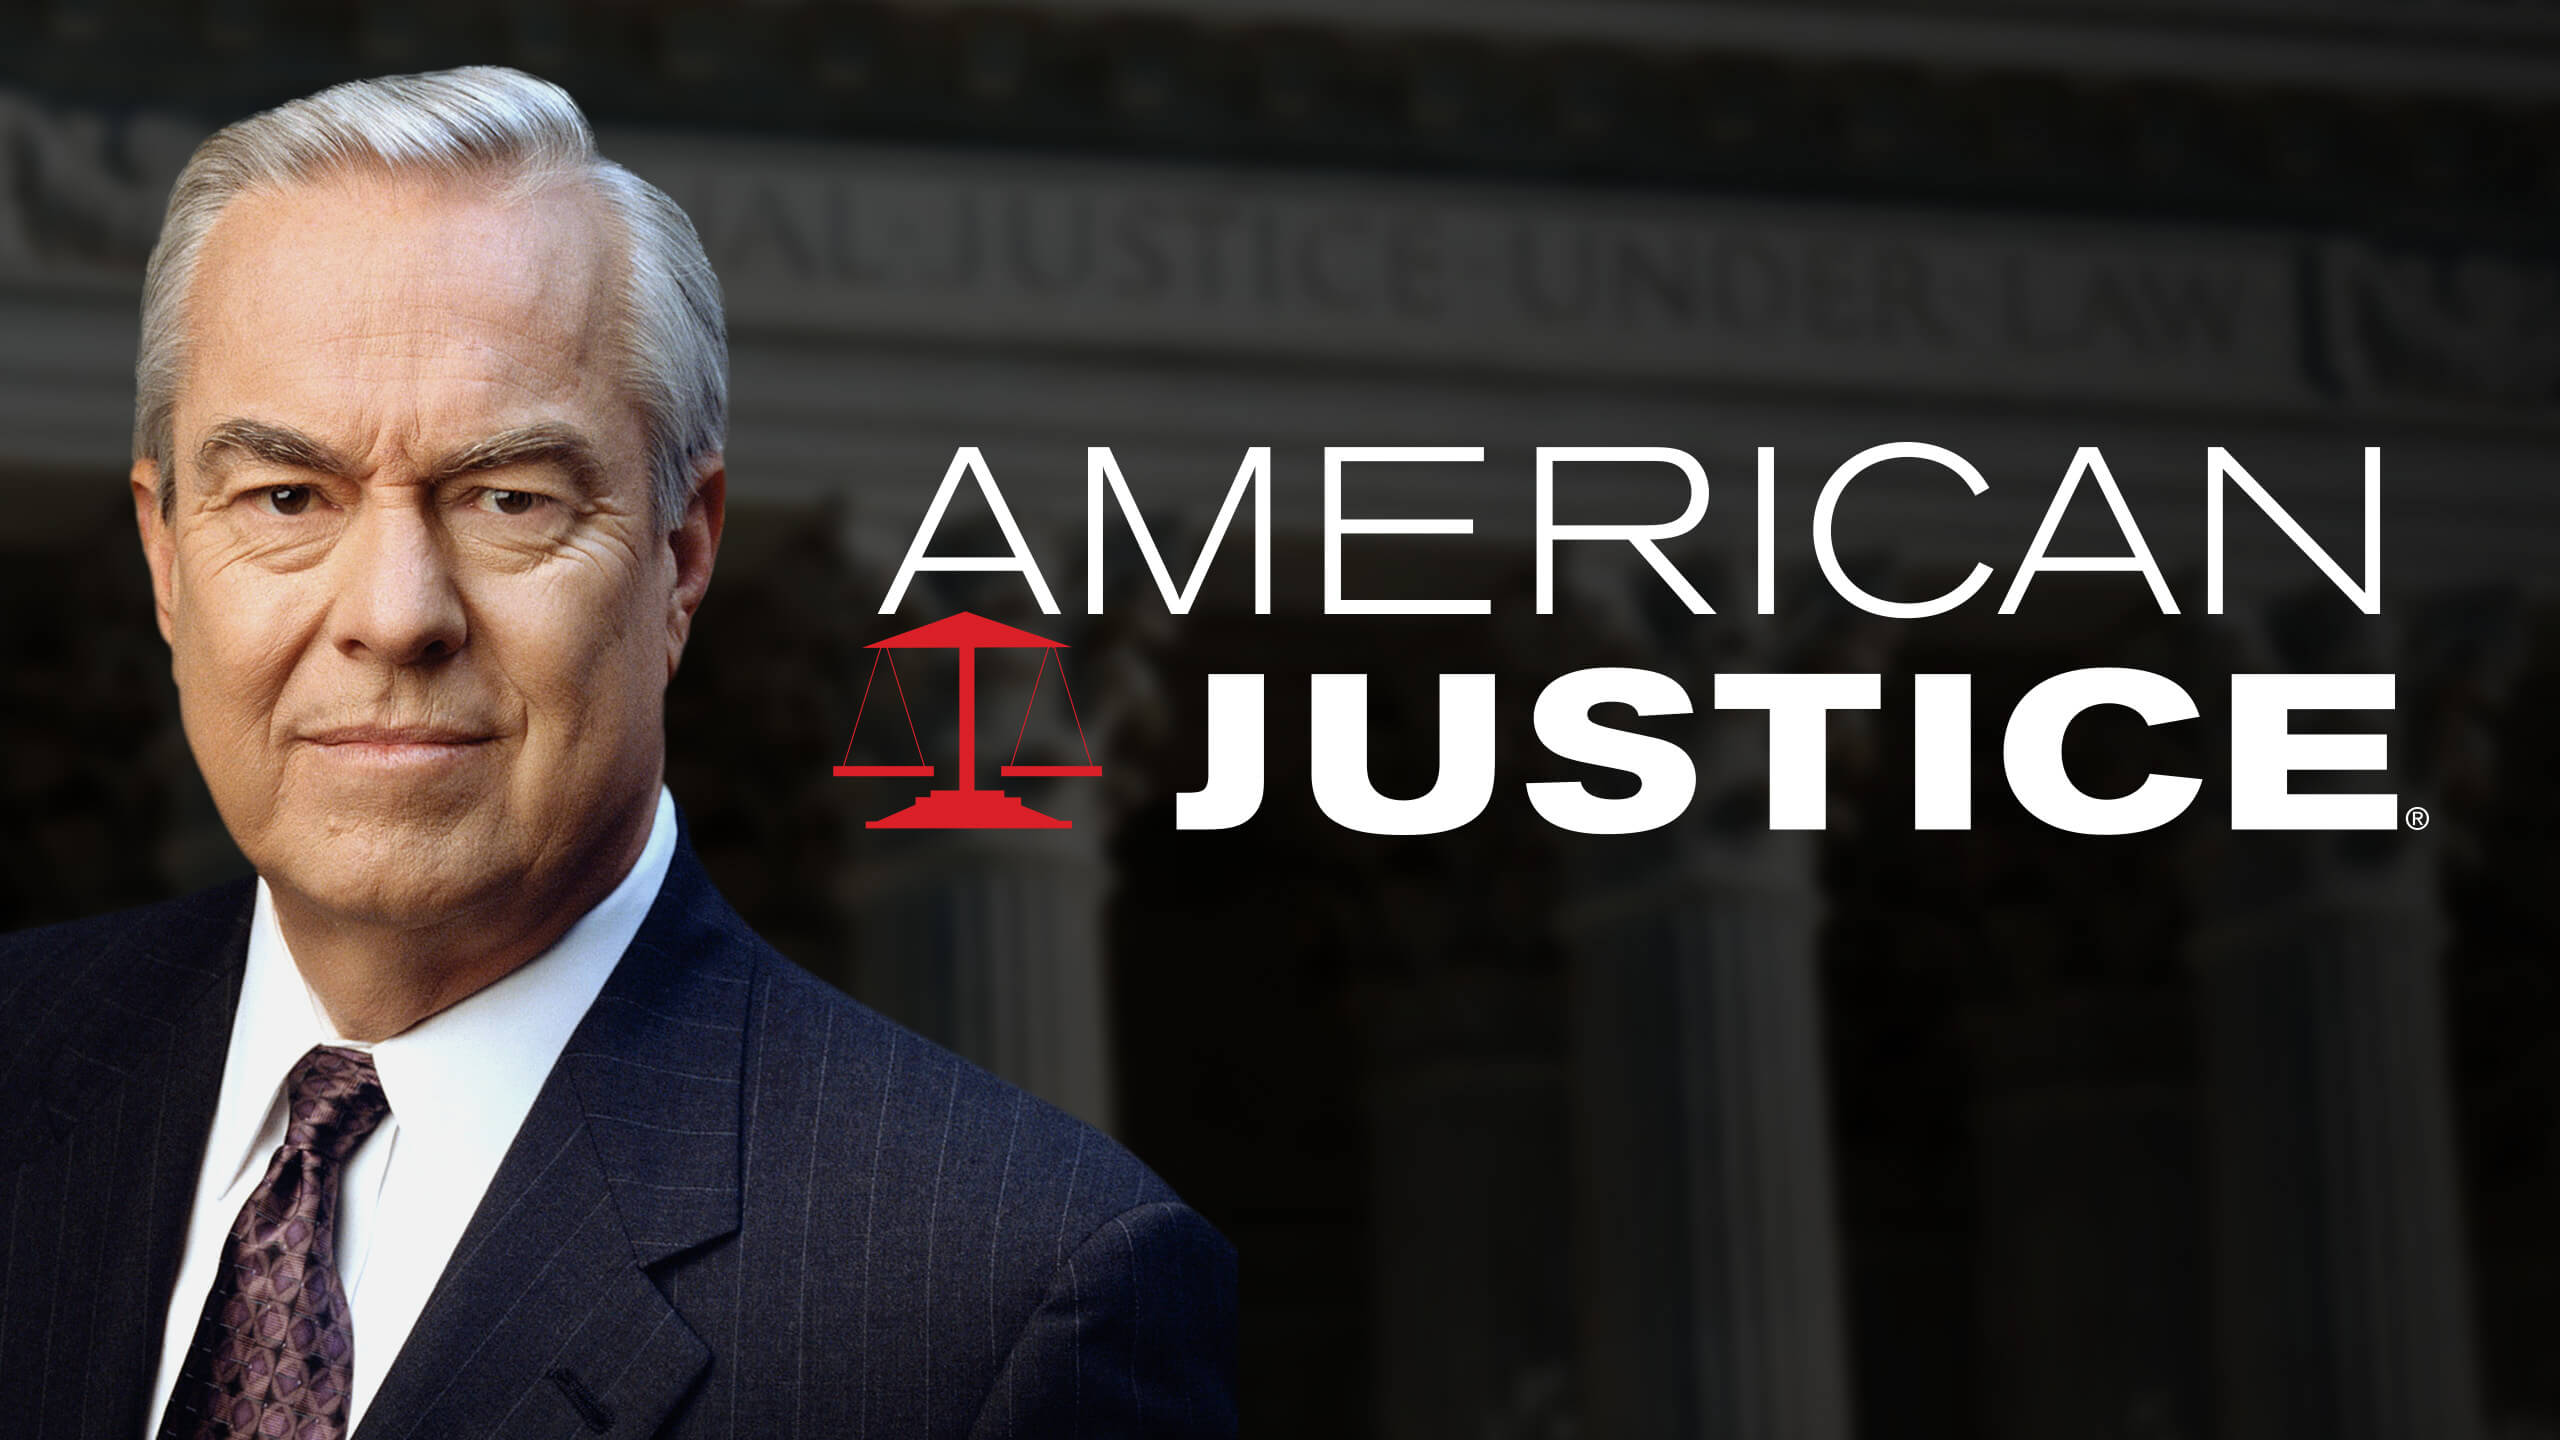 American-Justice-directv-shows